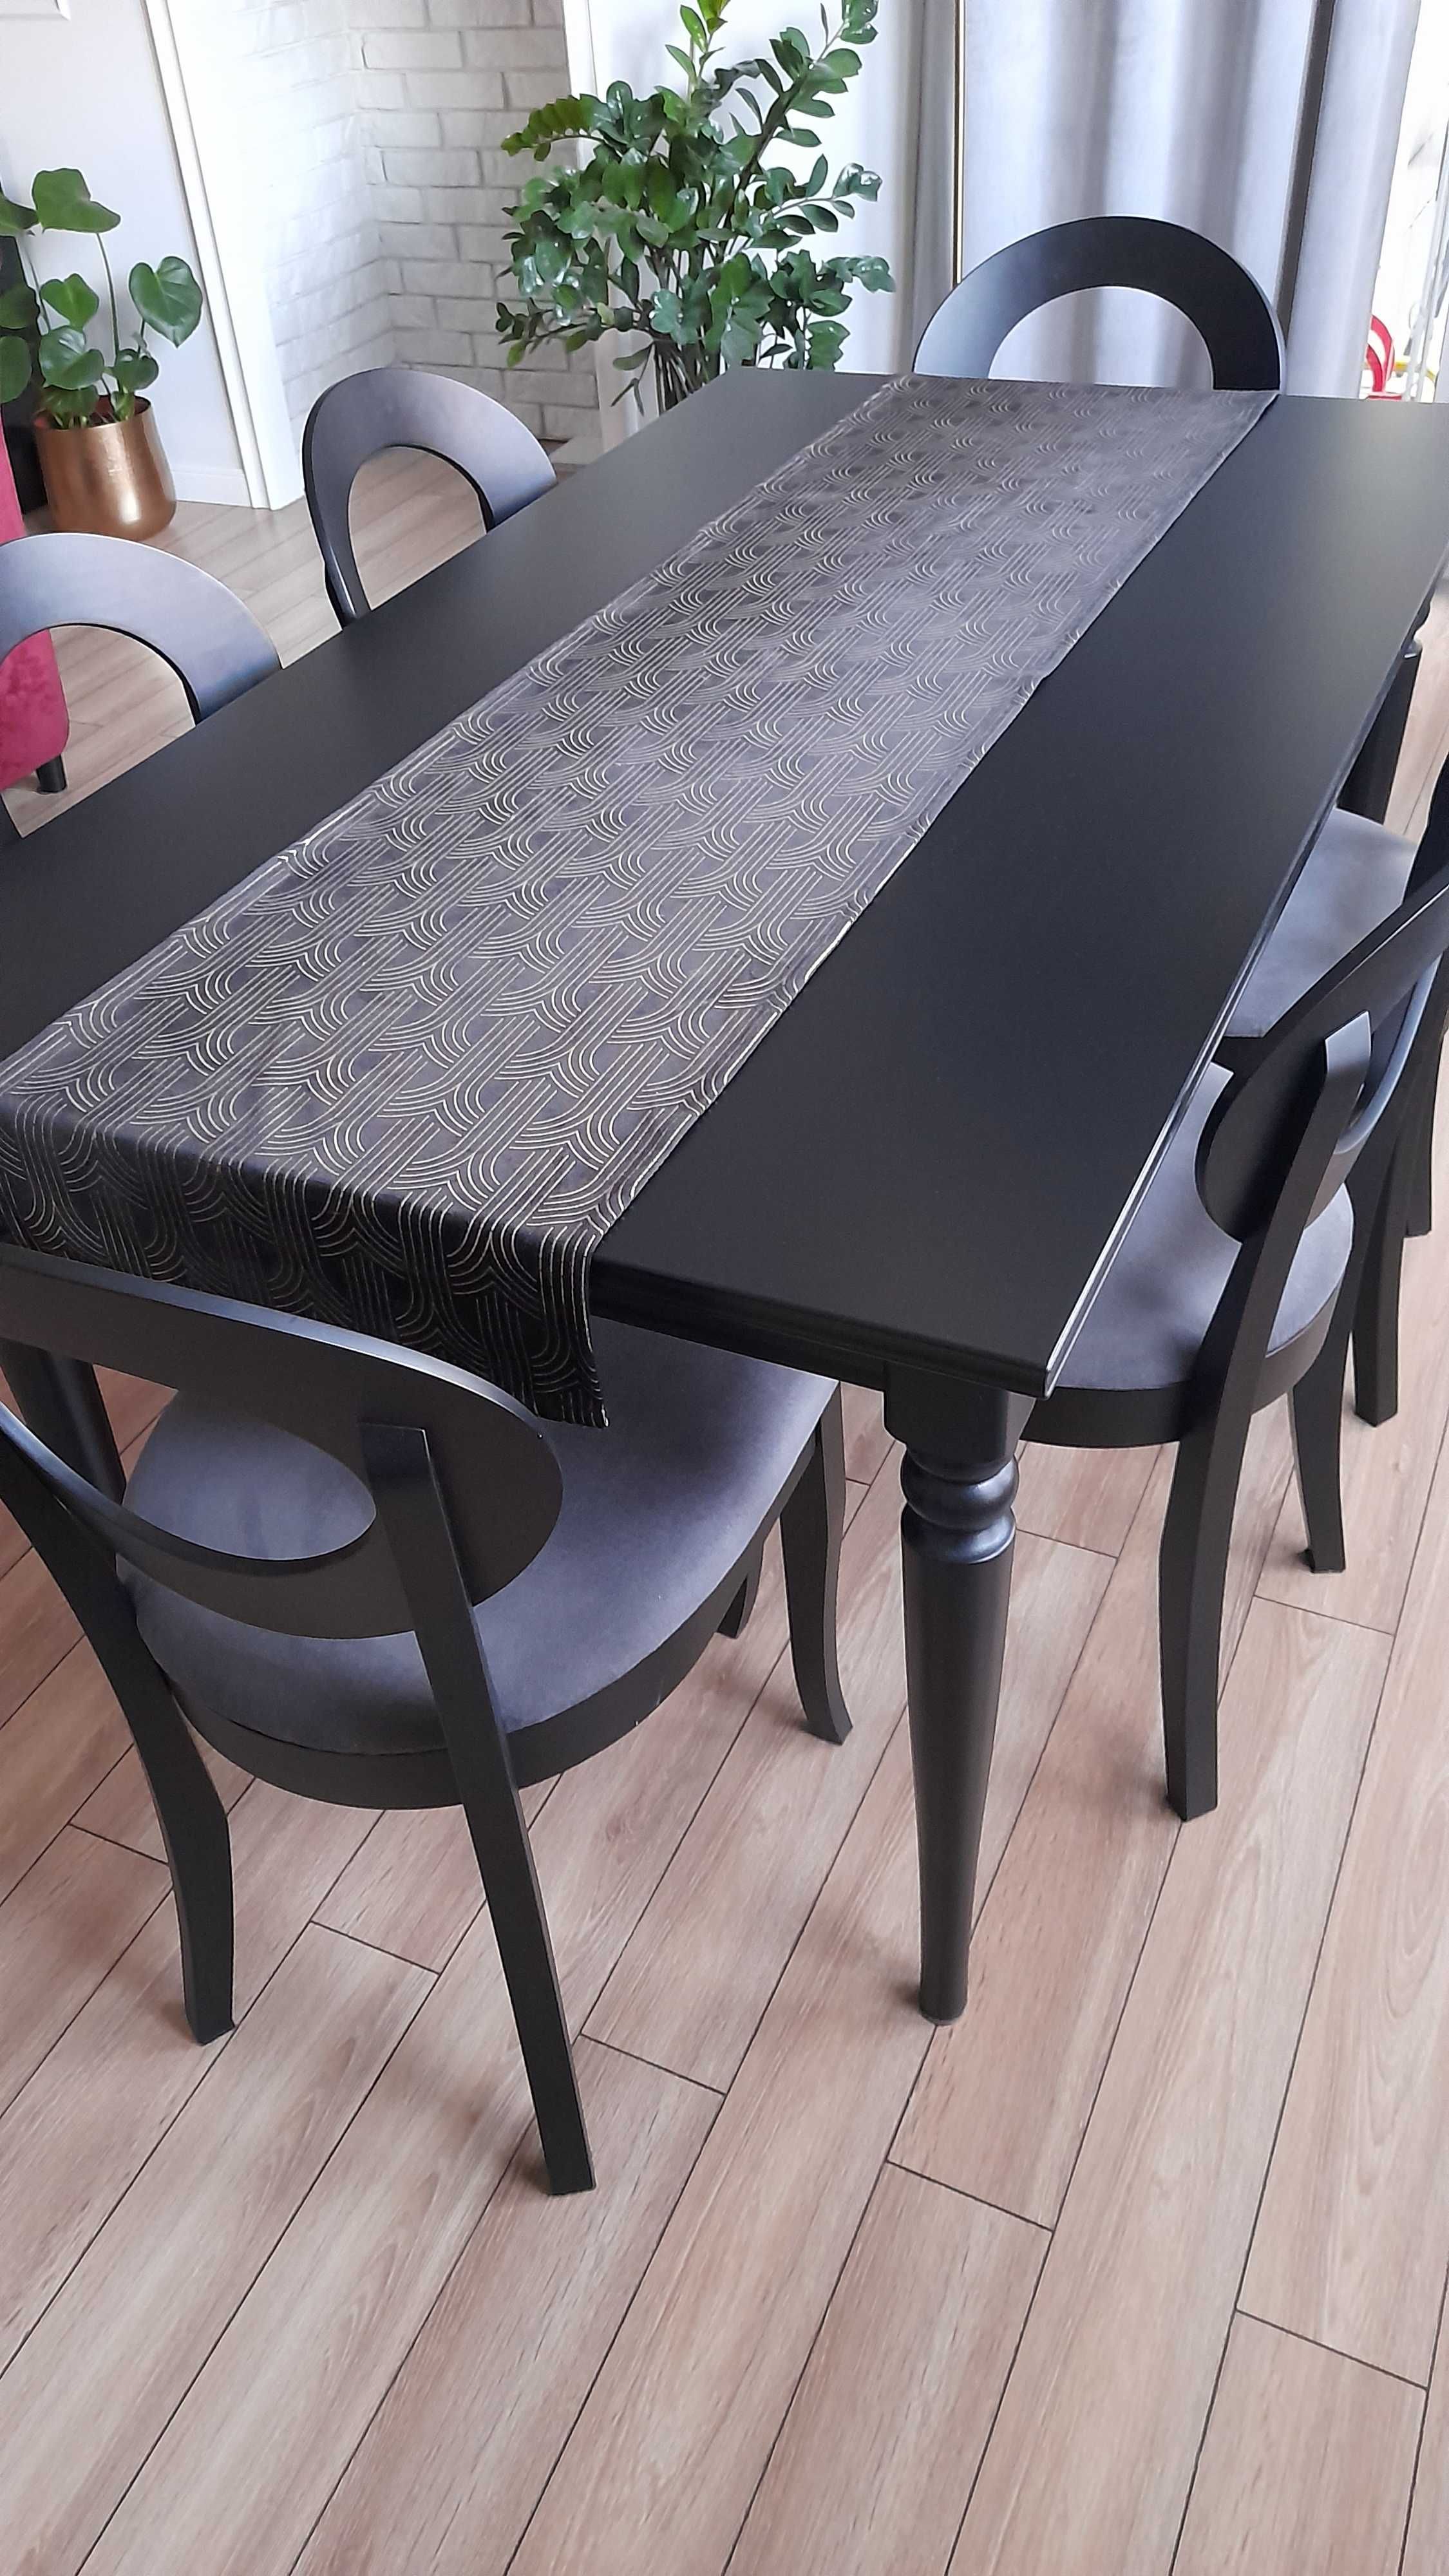 Stół INGATORP IKEA drewniany, rozkładany, czarny, 155/215x87 cm